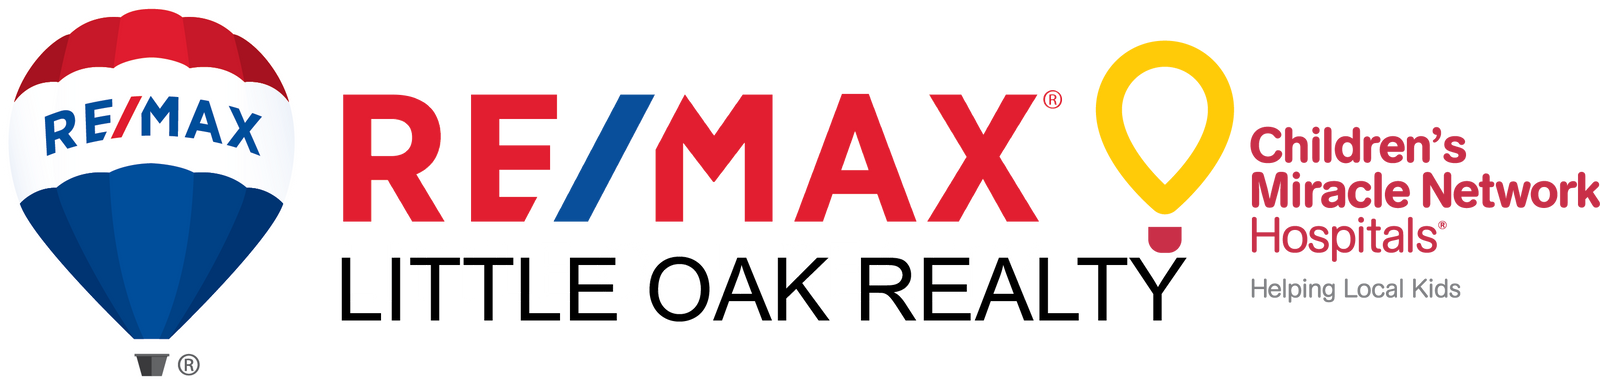 RE/MAX Little Oak Realty